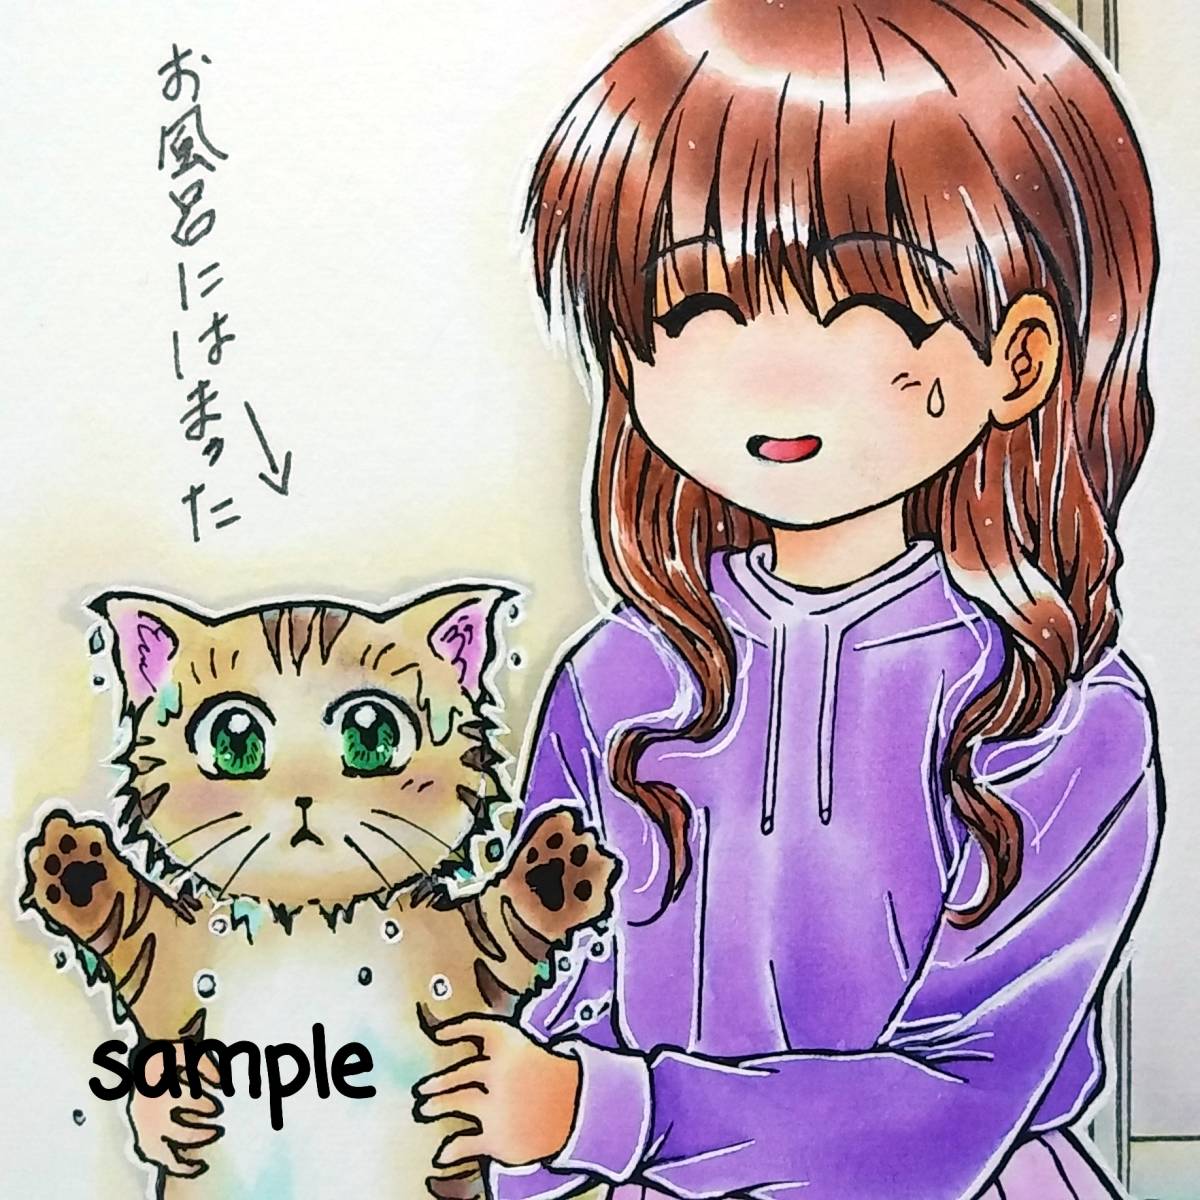 Нарисованная от руки иллюстрация оригинальная кошка застряла в ванне, комиксы, аниме товары, рисованная иллюстрация